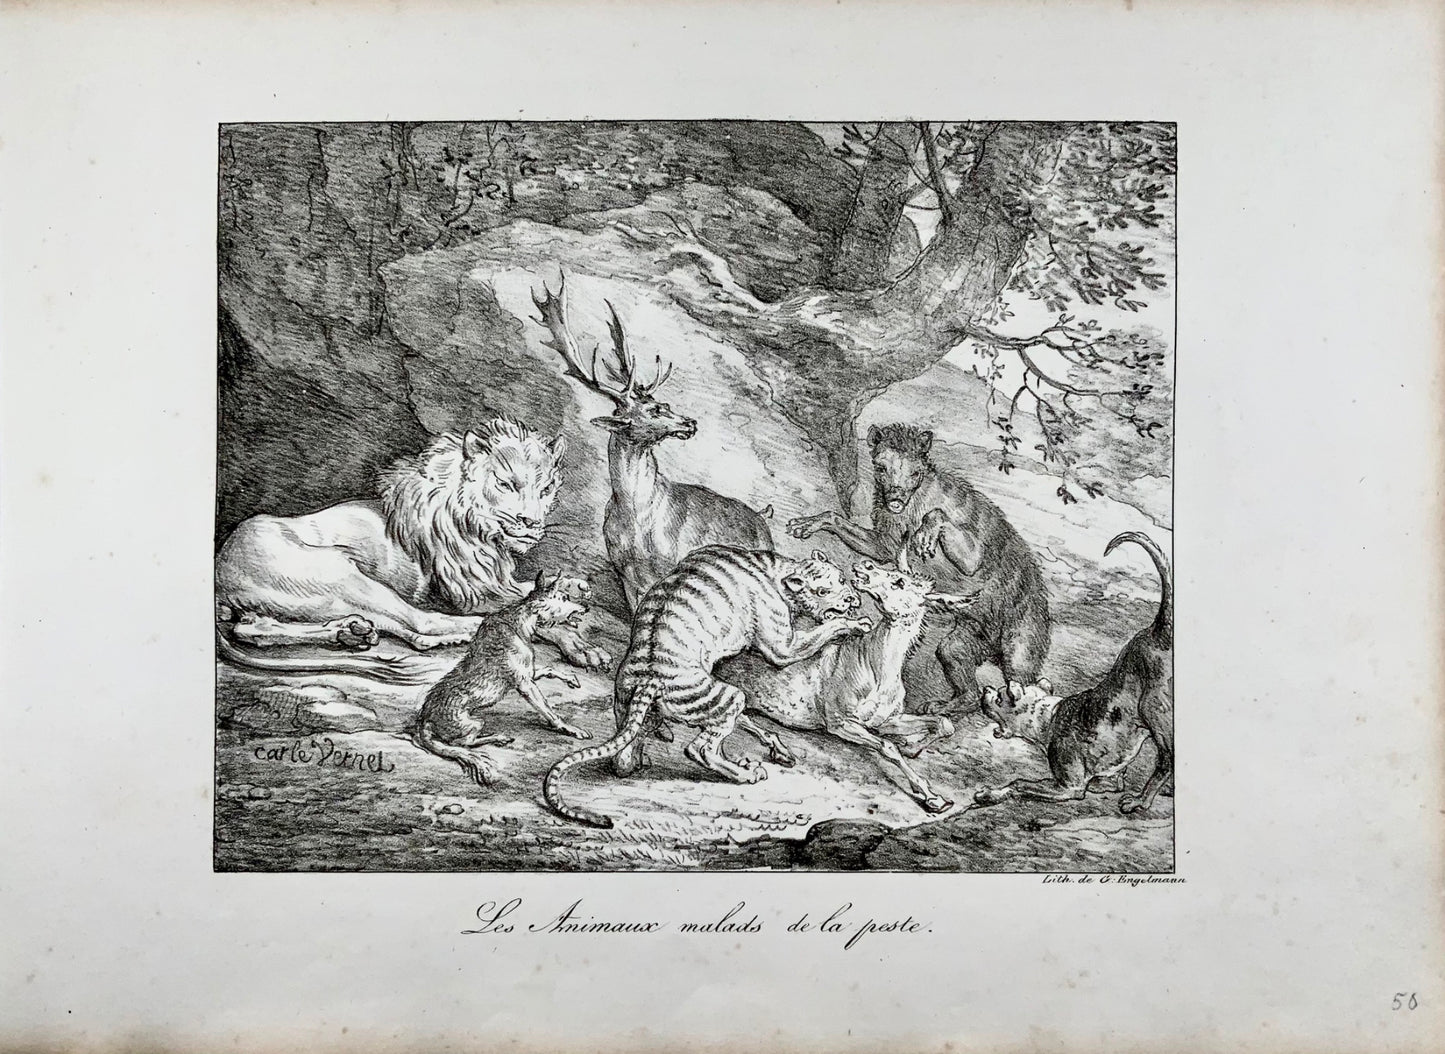 1818 'Incunaboli della litografia' Carle Vernet, G. Engelmann, Bestiario, Leone